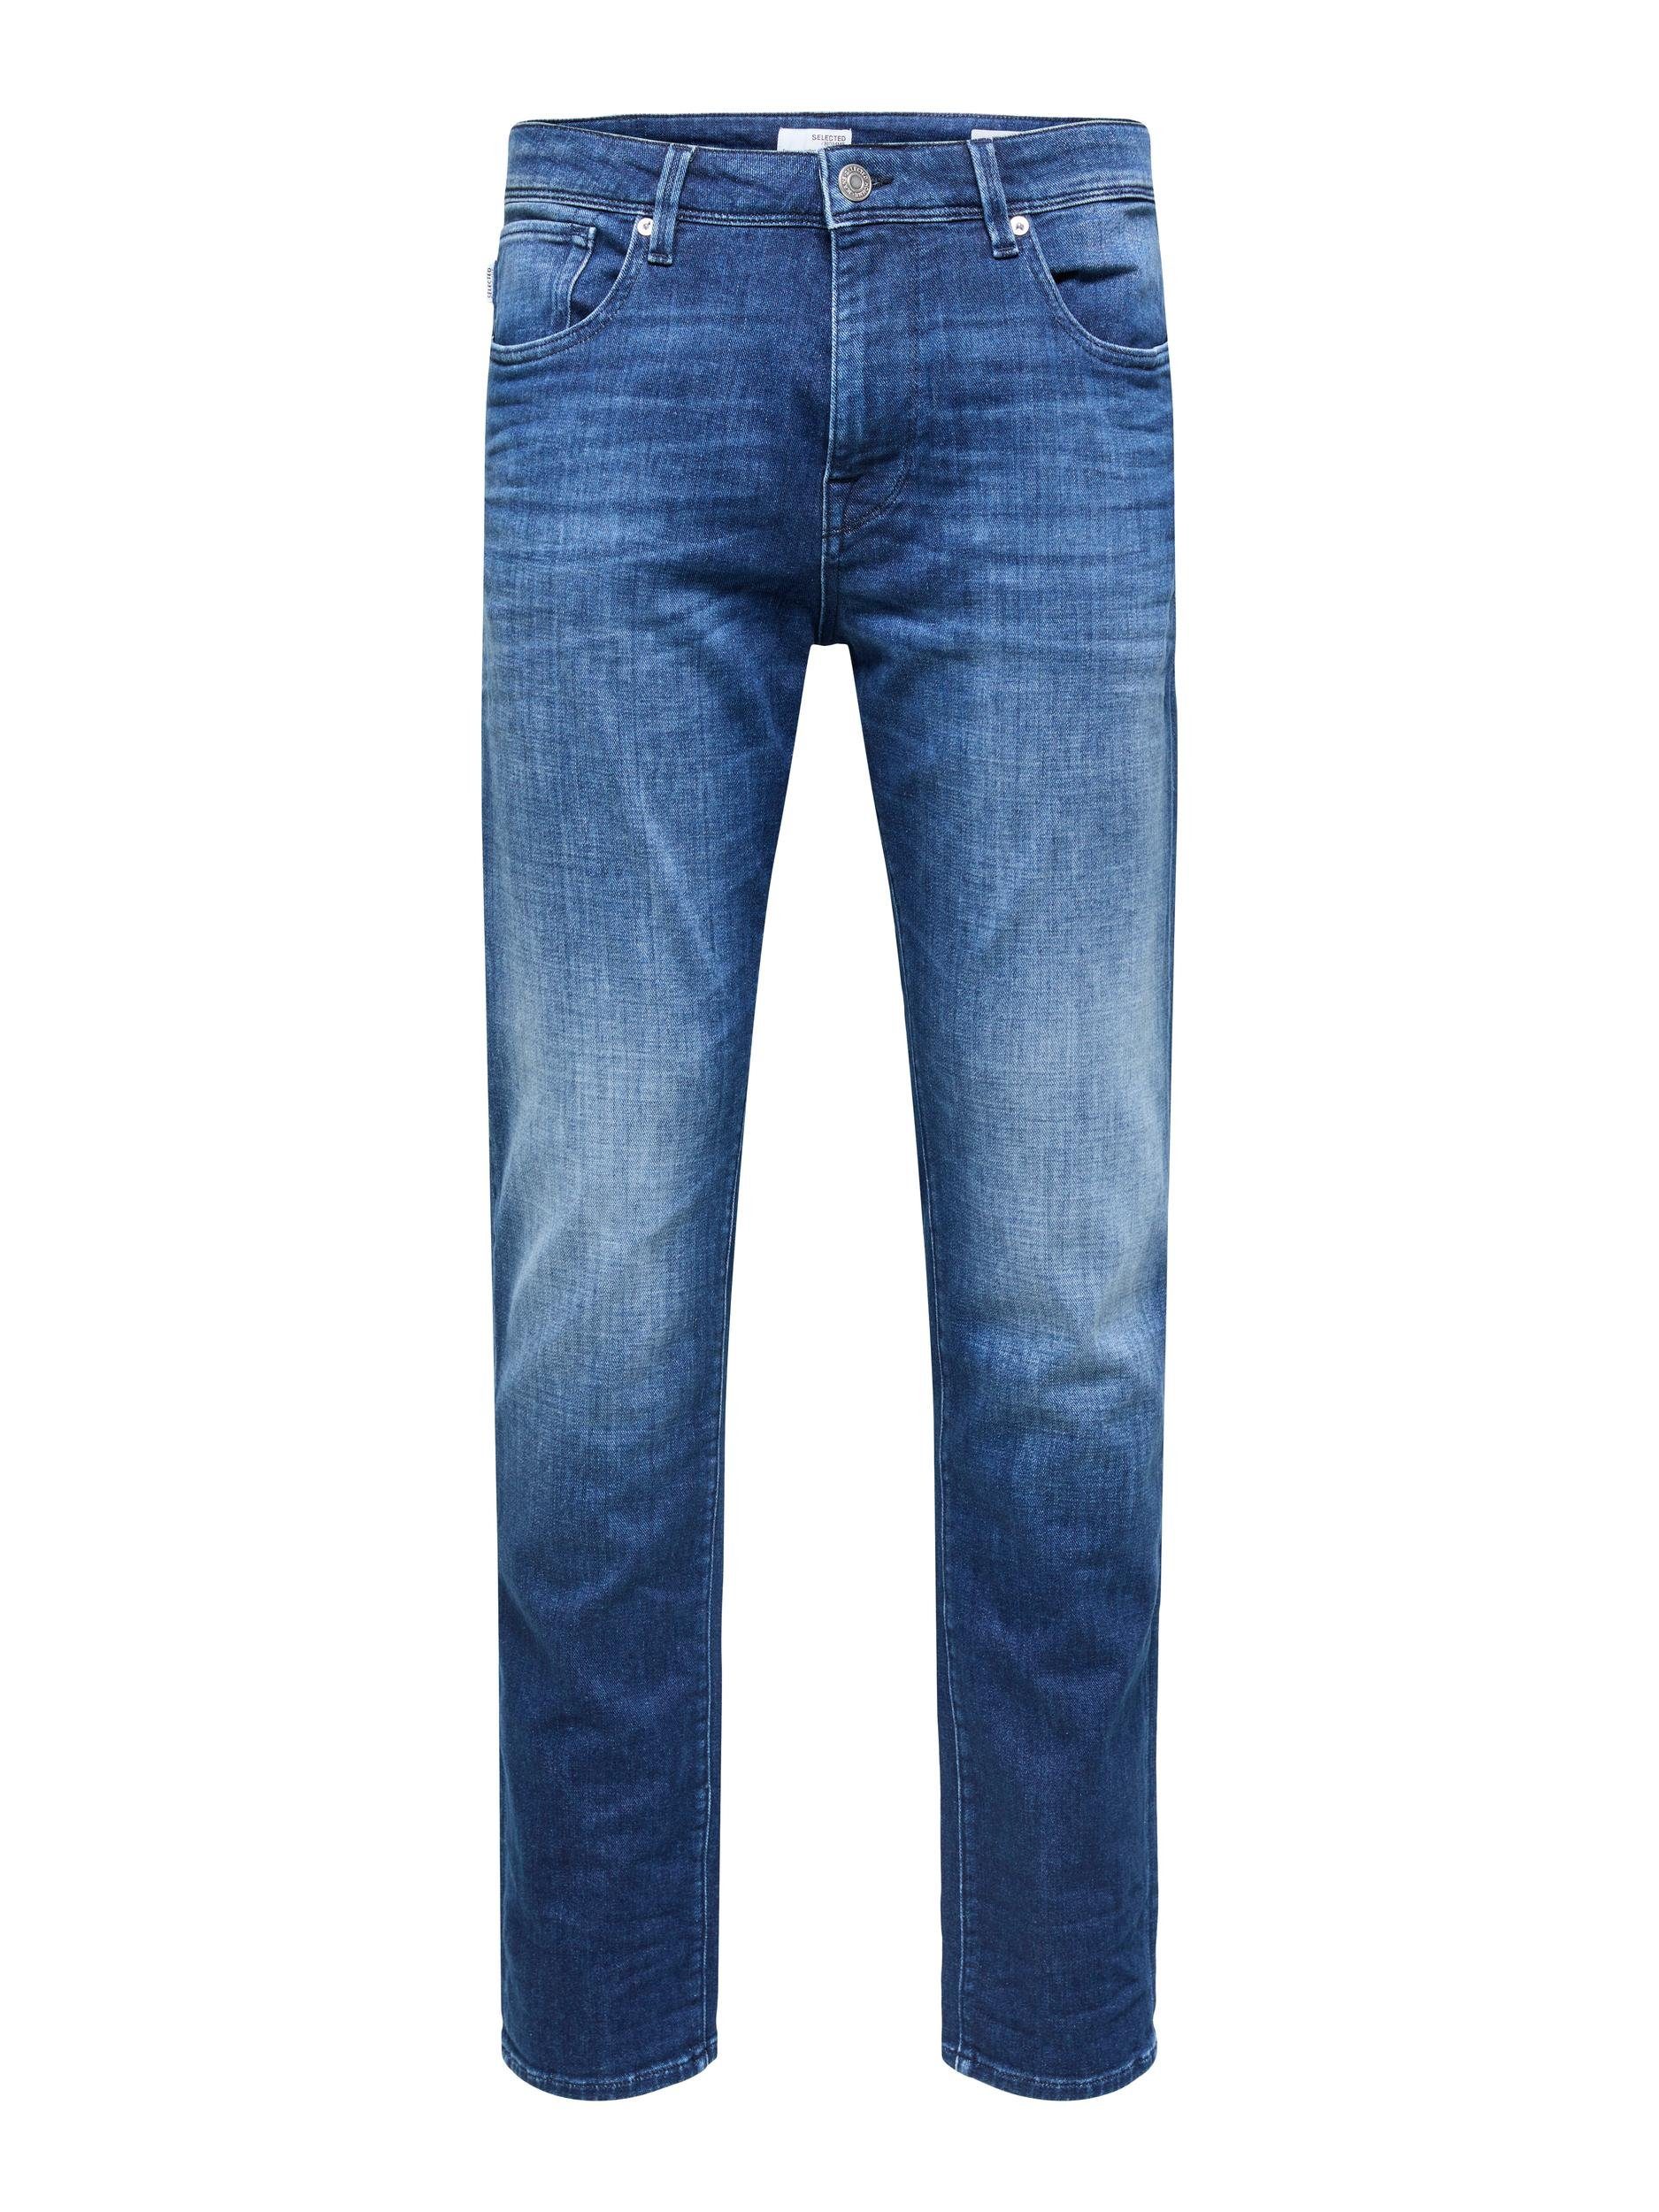 SELECTED HOMME 5-Pocket-Jeans 175 SLIM FIT JEANS